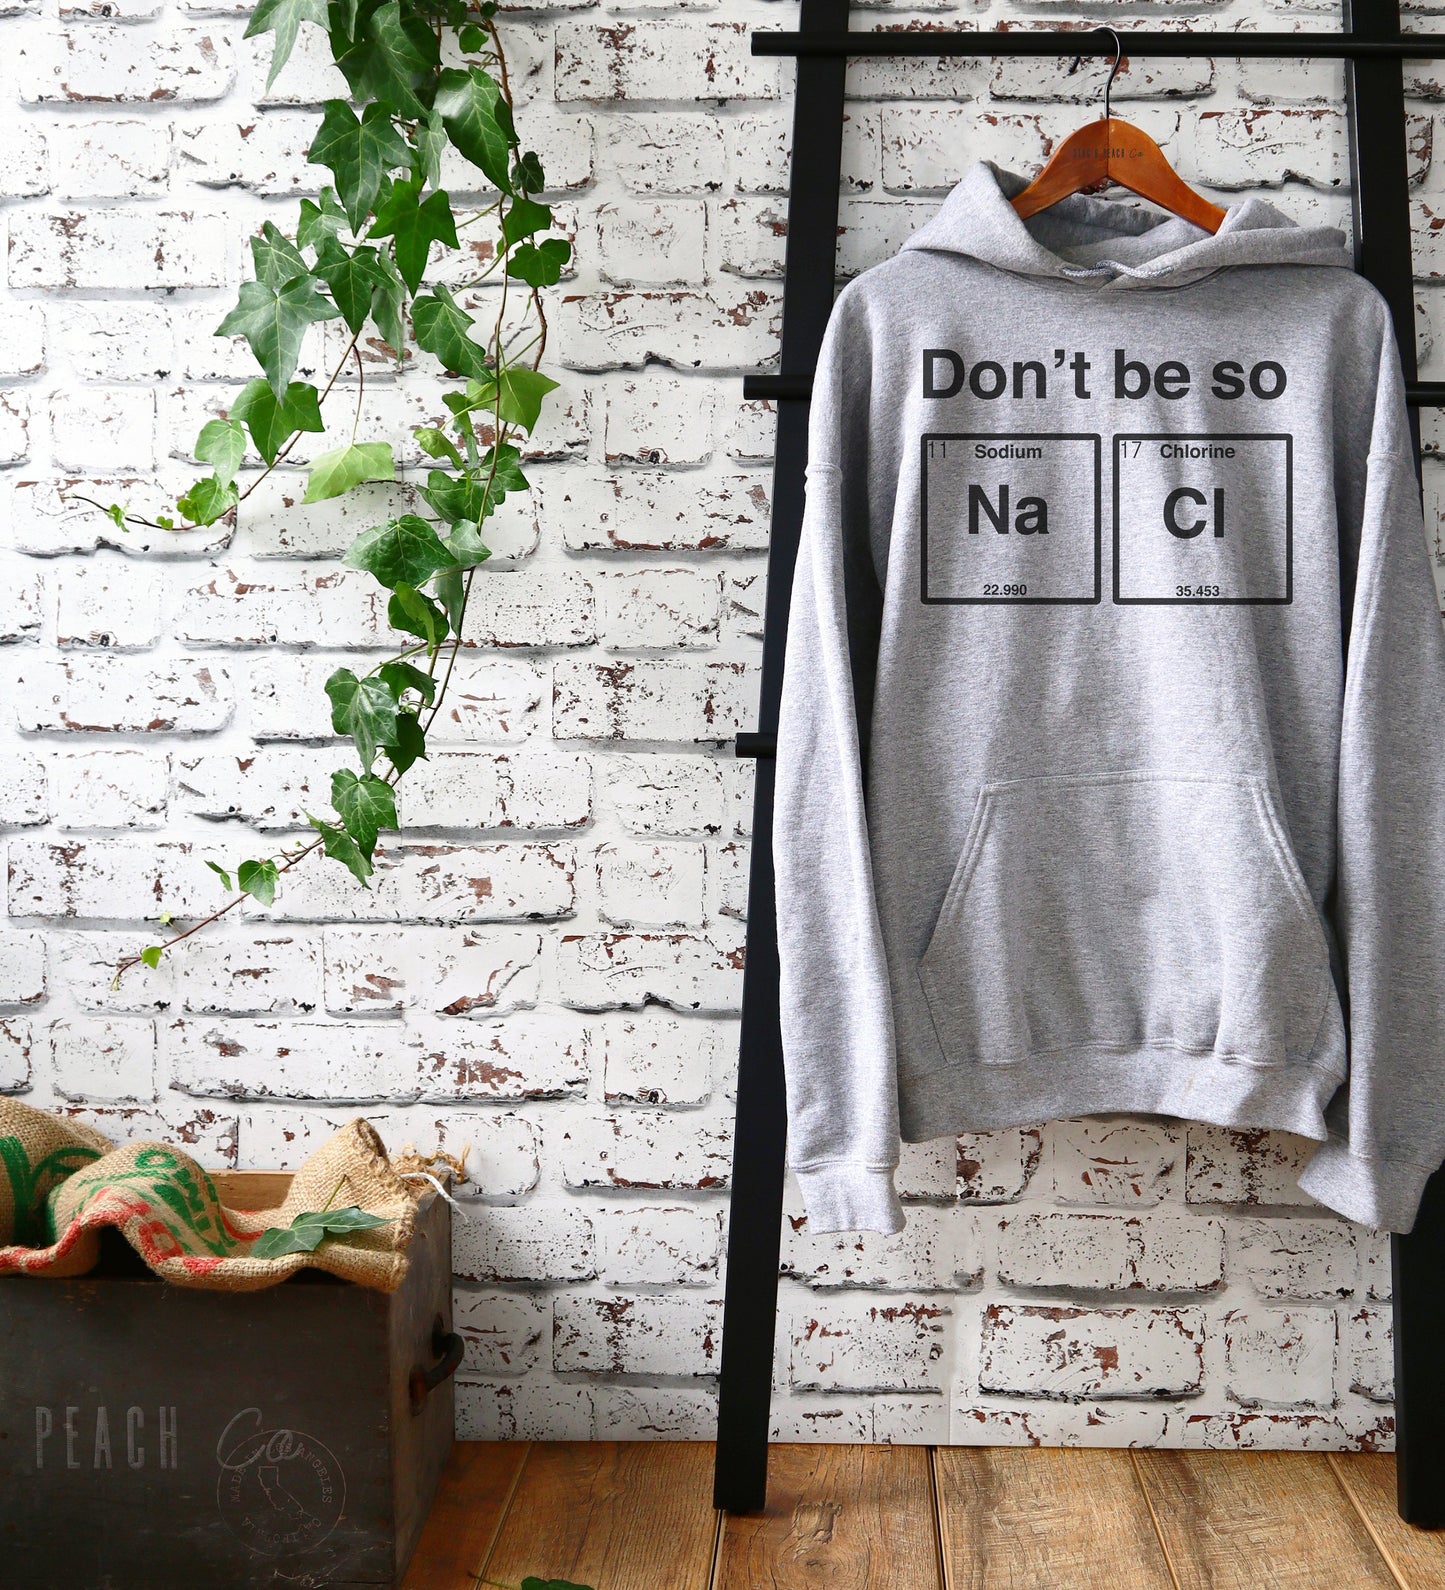 Don't Be So Salty Hoodie - Chemistry shirt, Science shirt, Periodic table shirt, Chemistry gift, Chemistry teacher, Chemistry hoodie